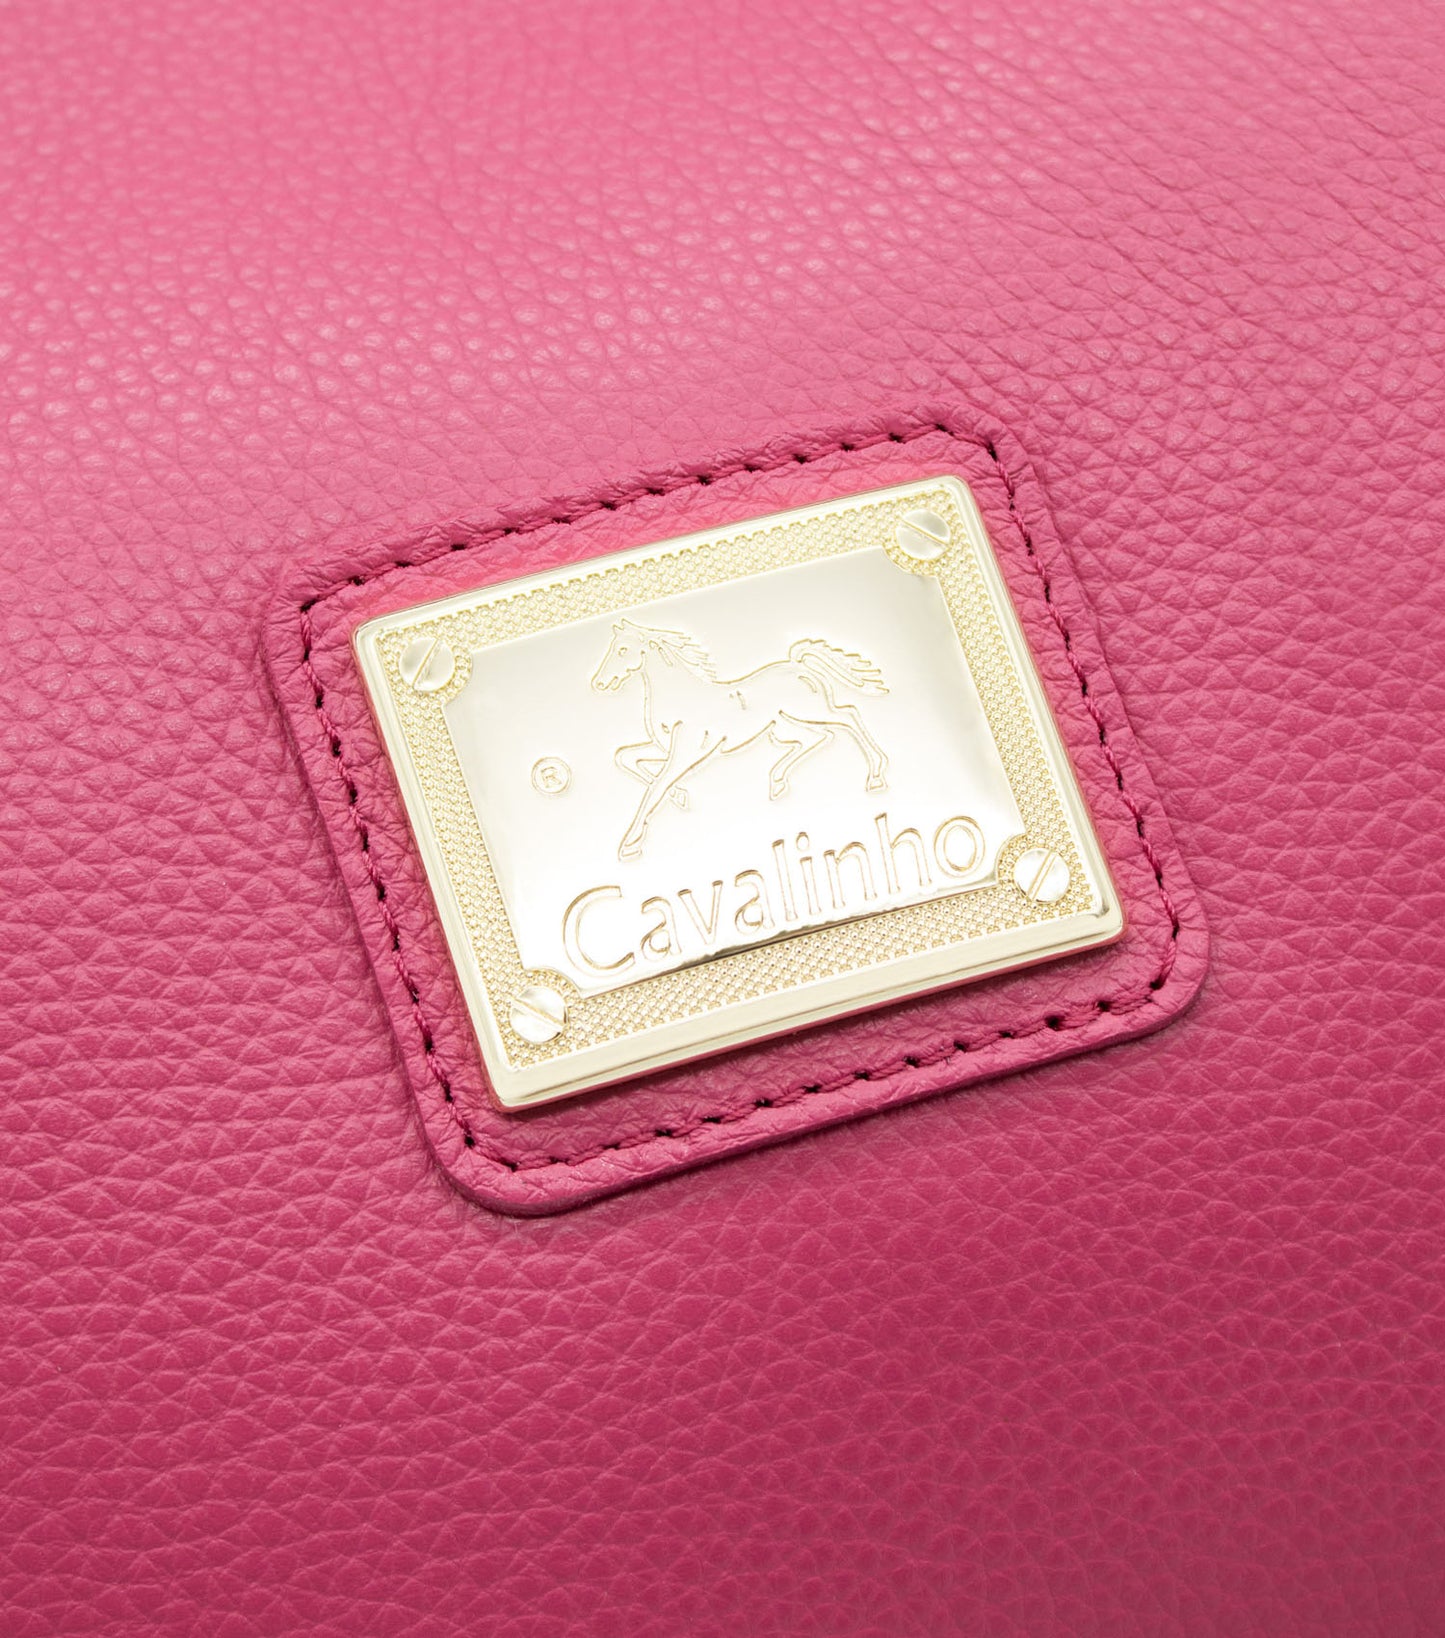 Cavalinho Muse Leather Handbag - HotPink - 18300475.18_P06